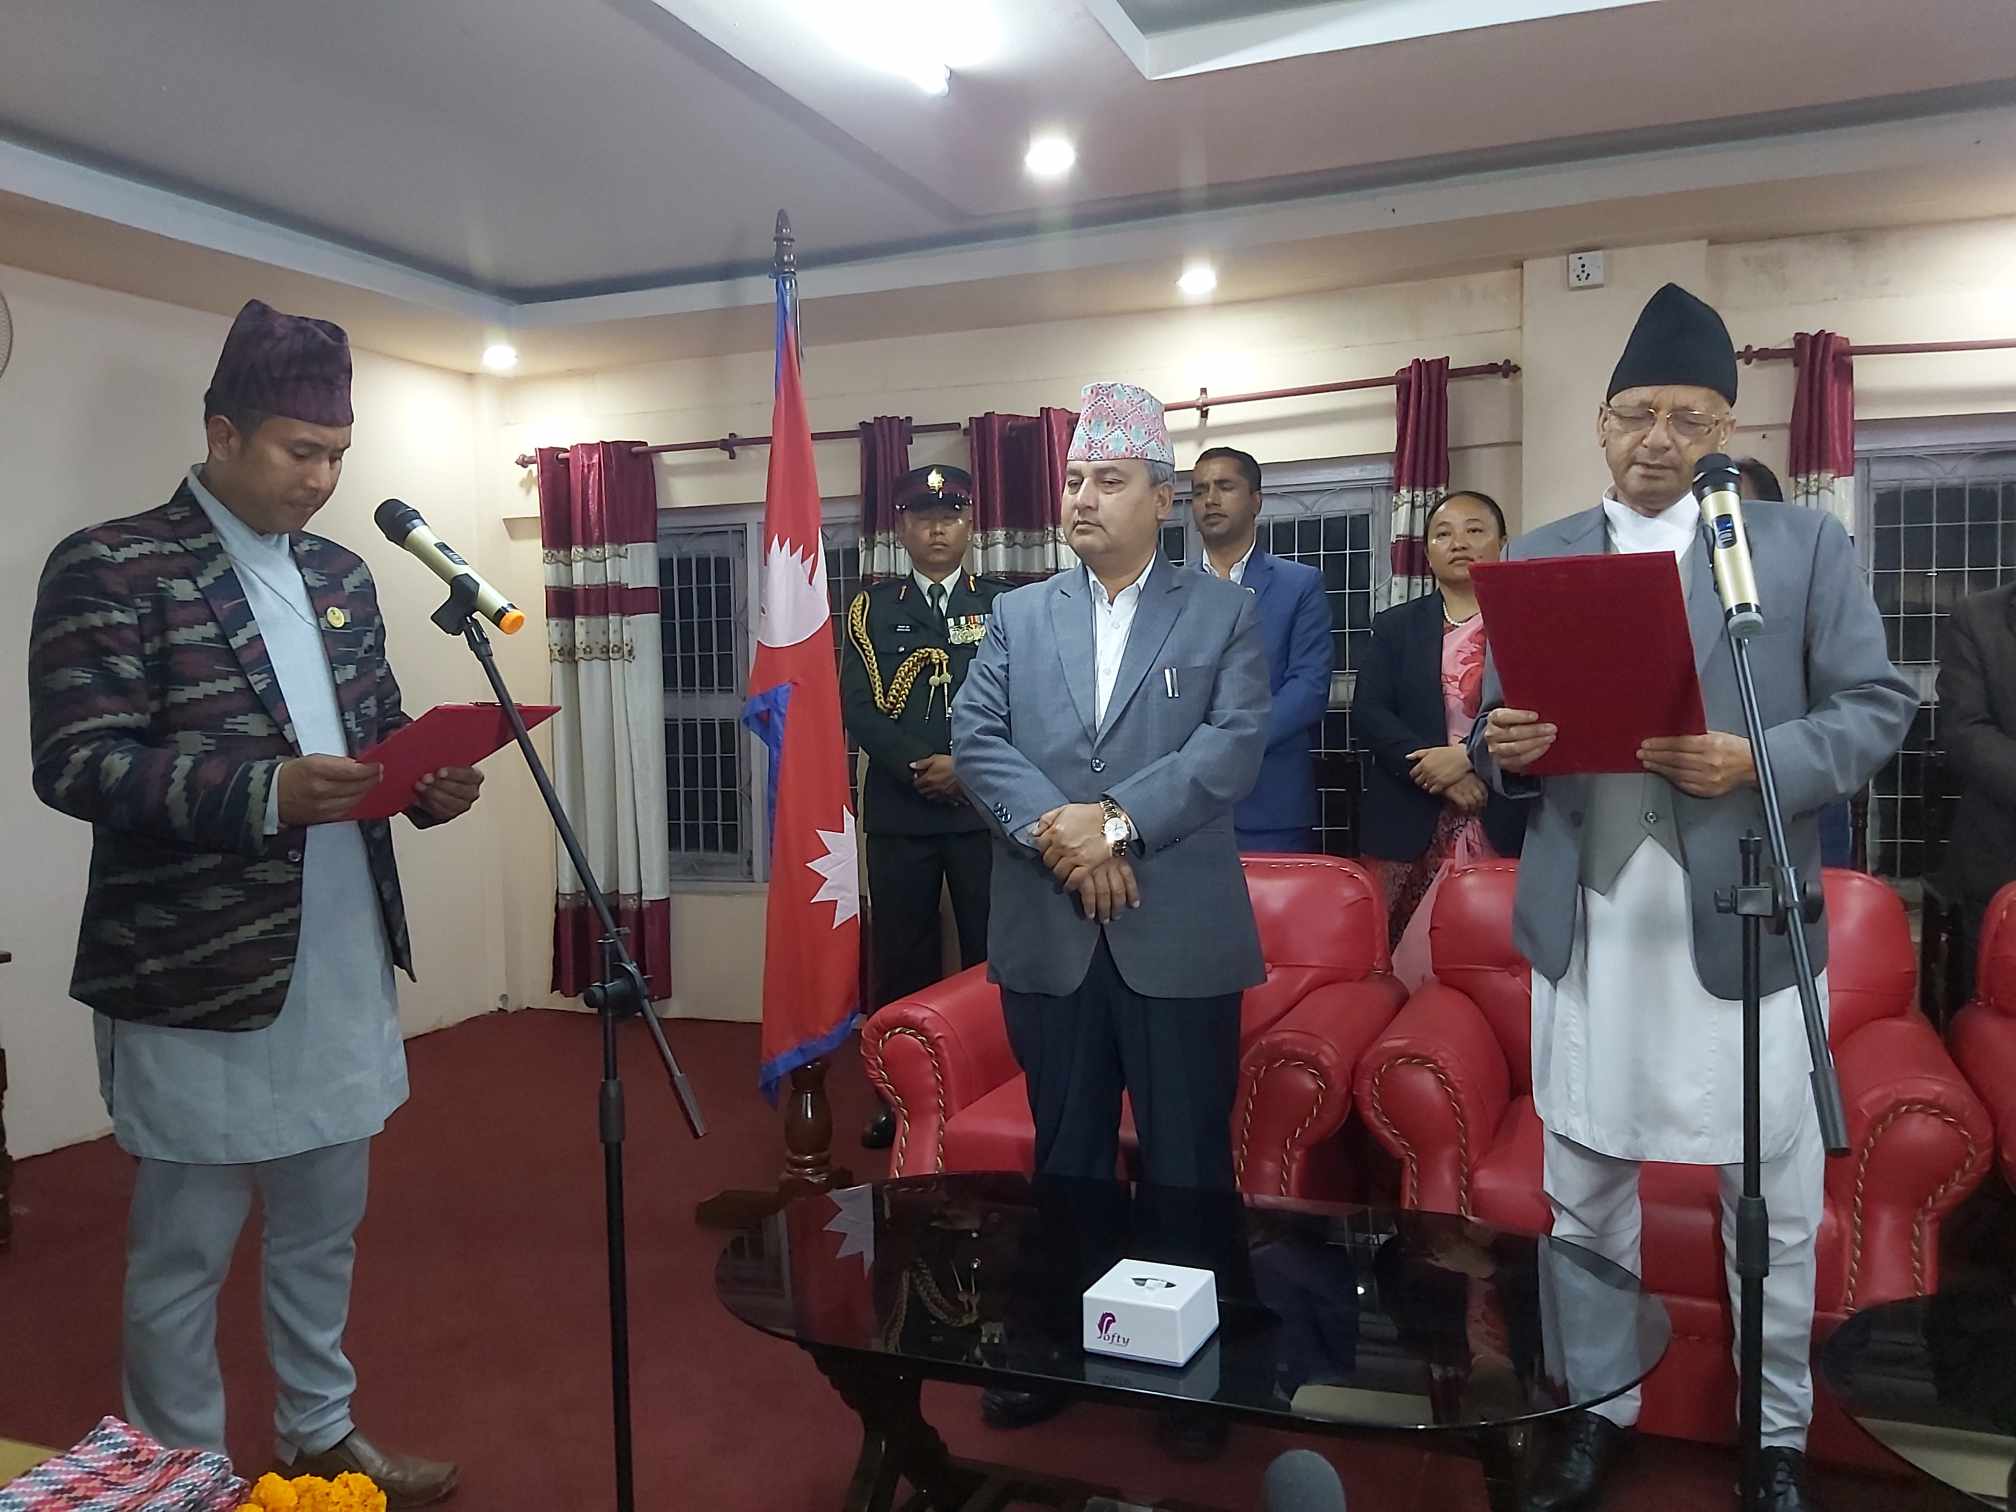 बागमती सरकारमा हाम्रो नेपाली पार्टीको प्रवेश, बज्राचार्यले लिए मन्त्री पदको शपथ